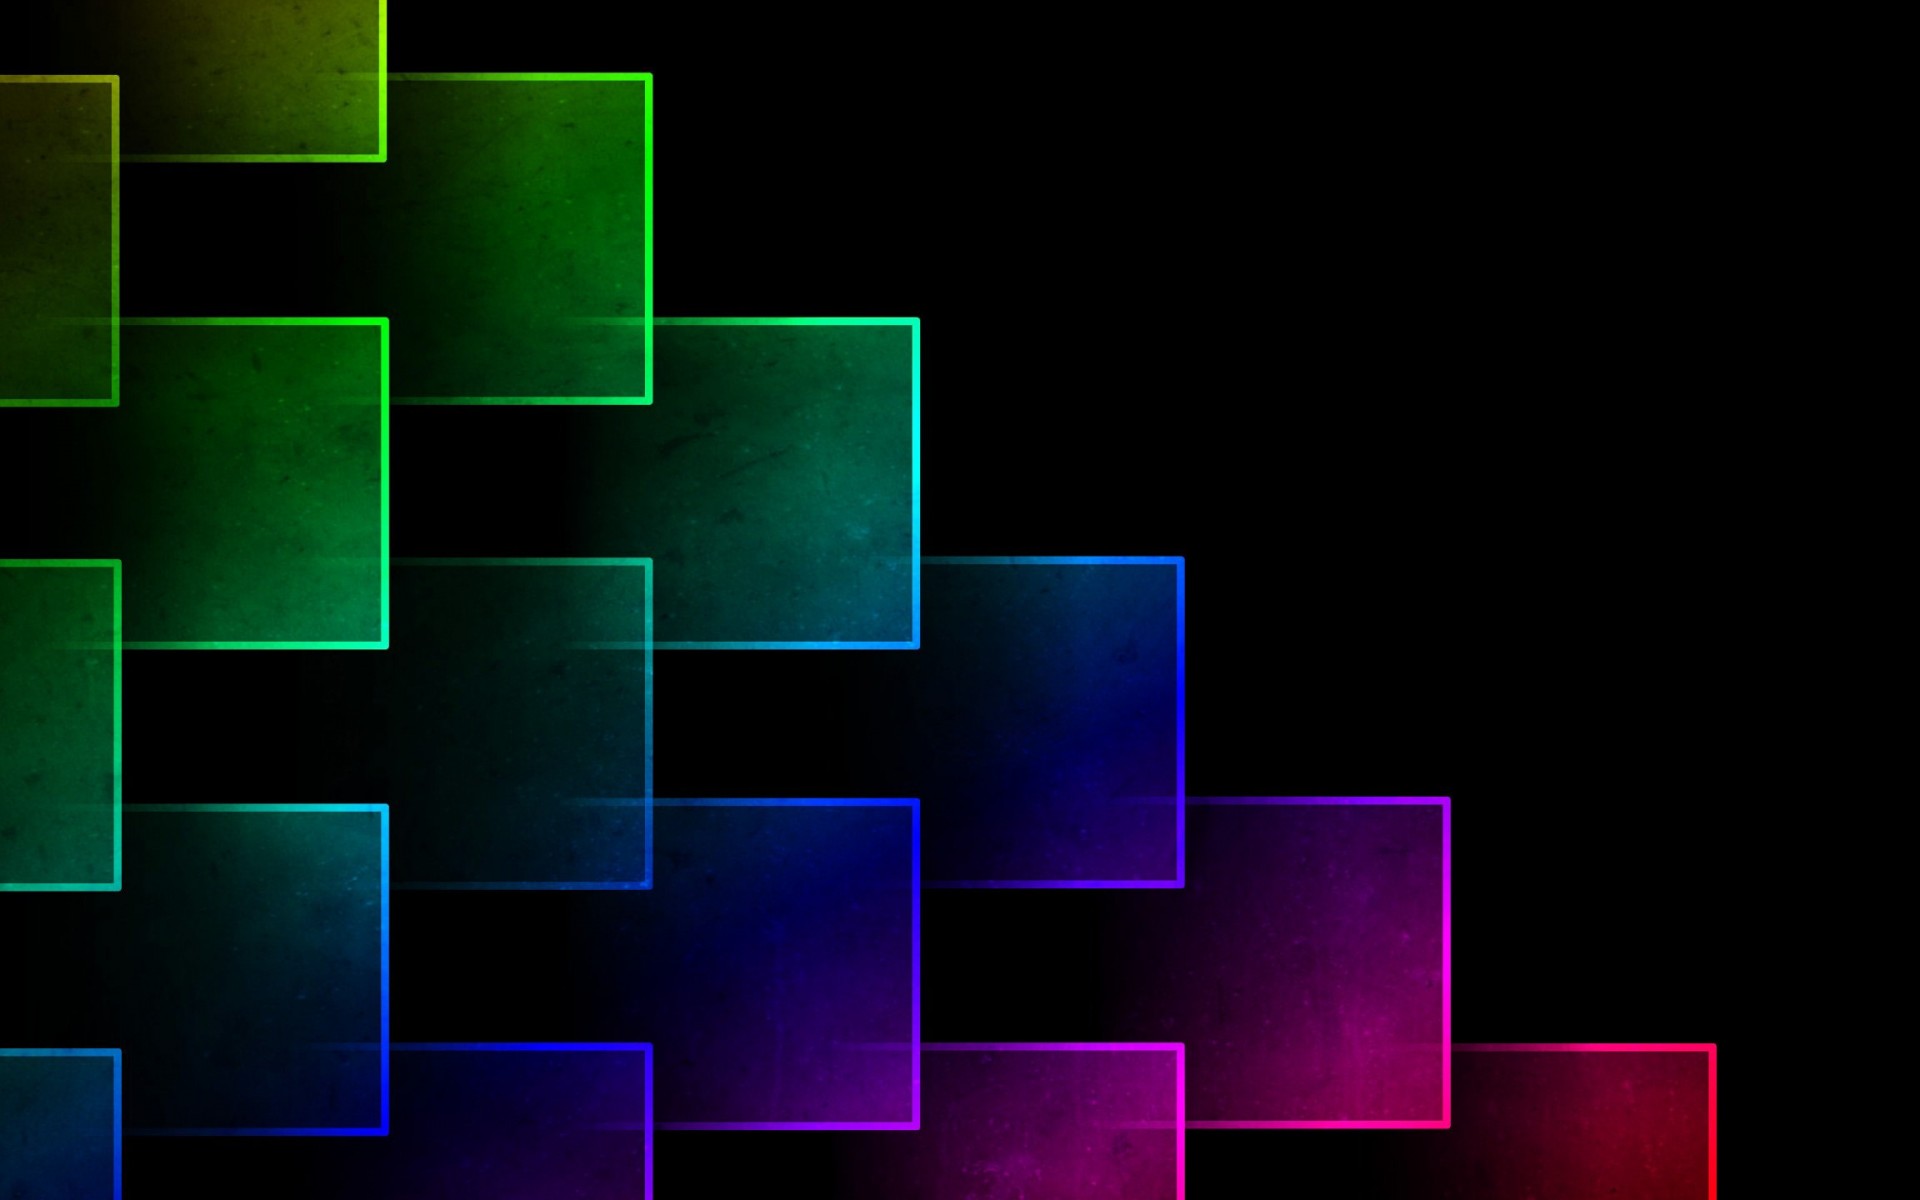 cube wallpaper,design,graphics,pattern,square,graphic design